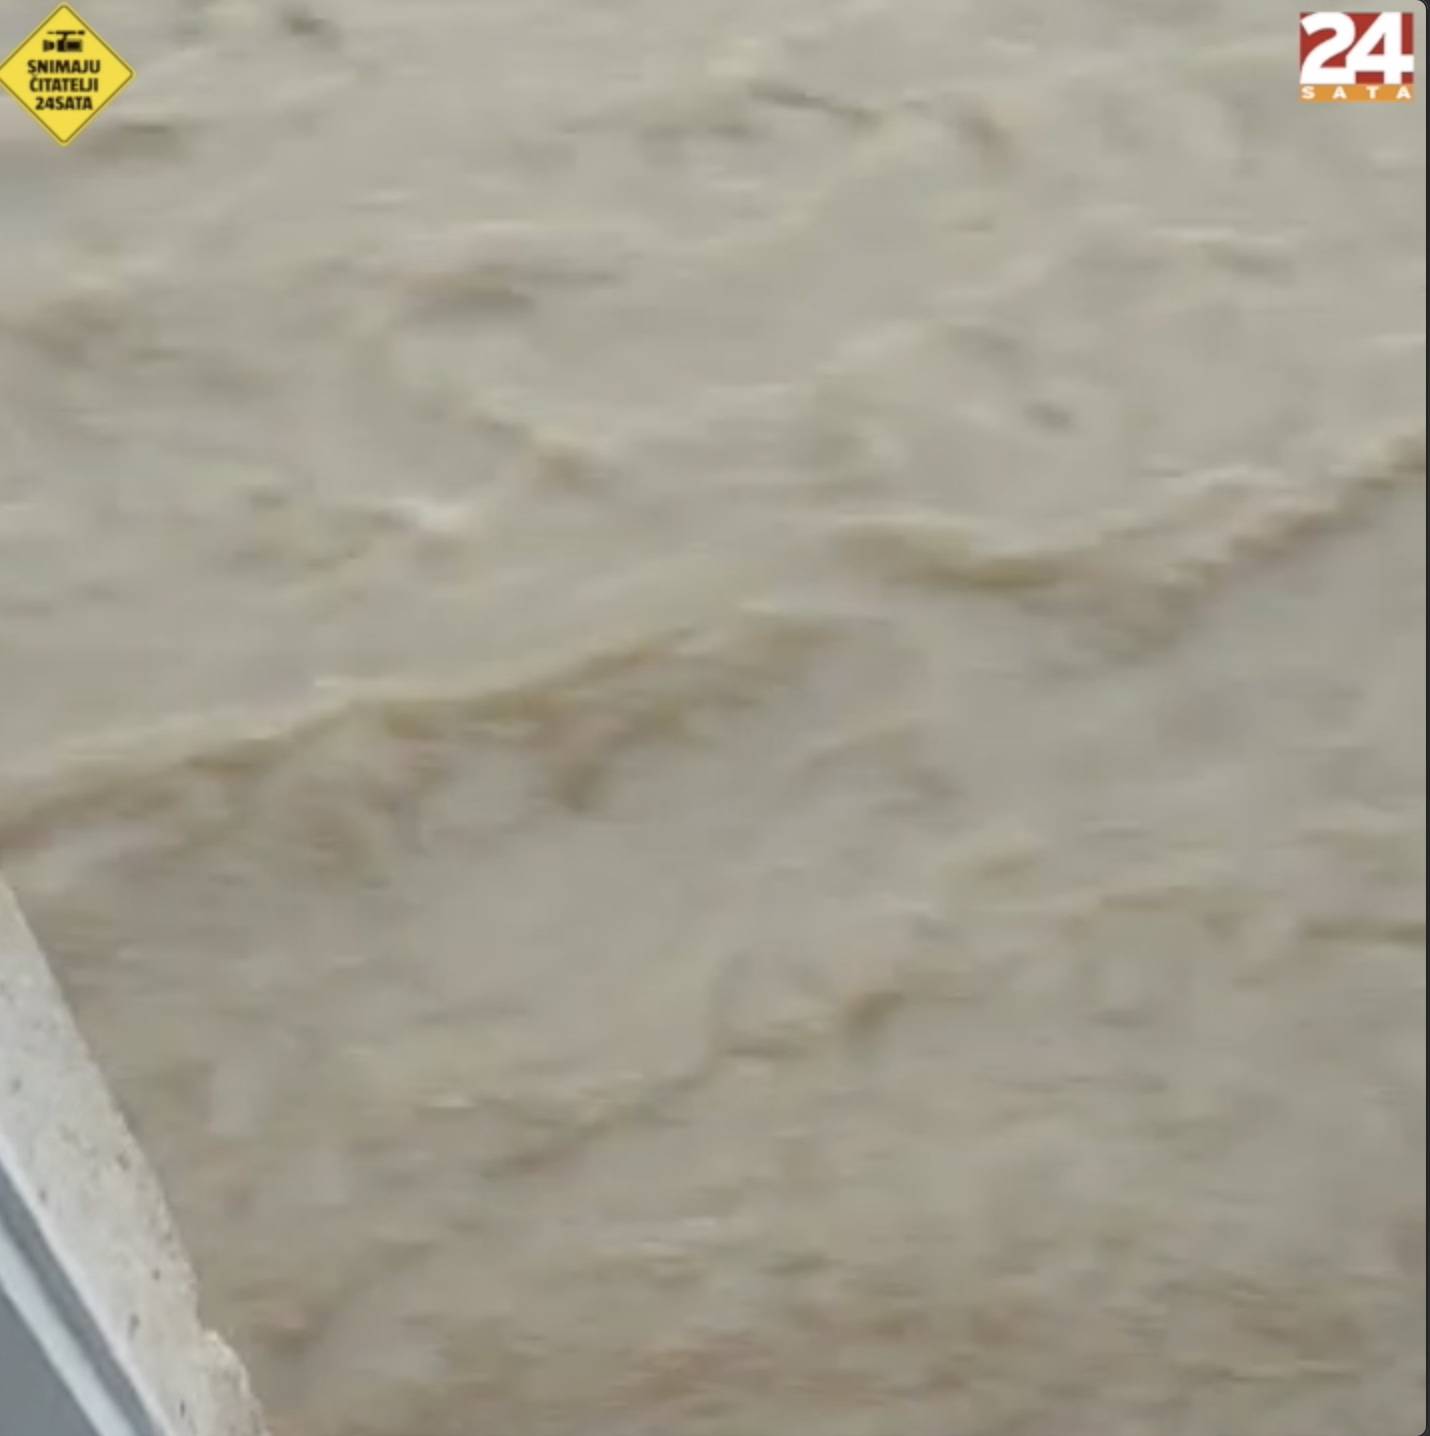 VIDEO Biblijski potop na Hvaru: 'Bujica se odjednom počela slijevati niz ulice i preko pjace'